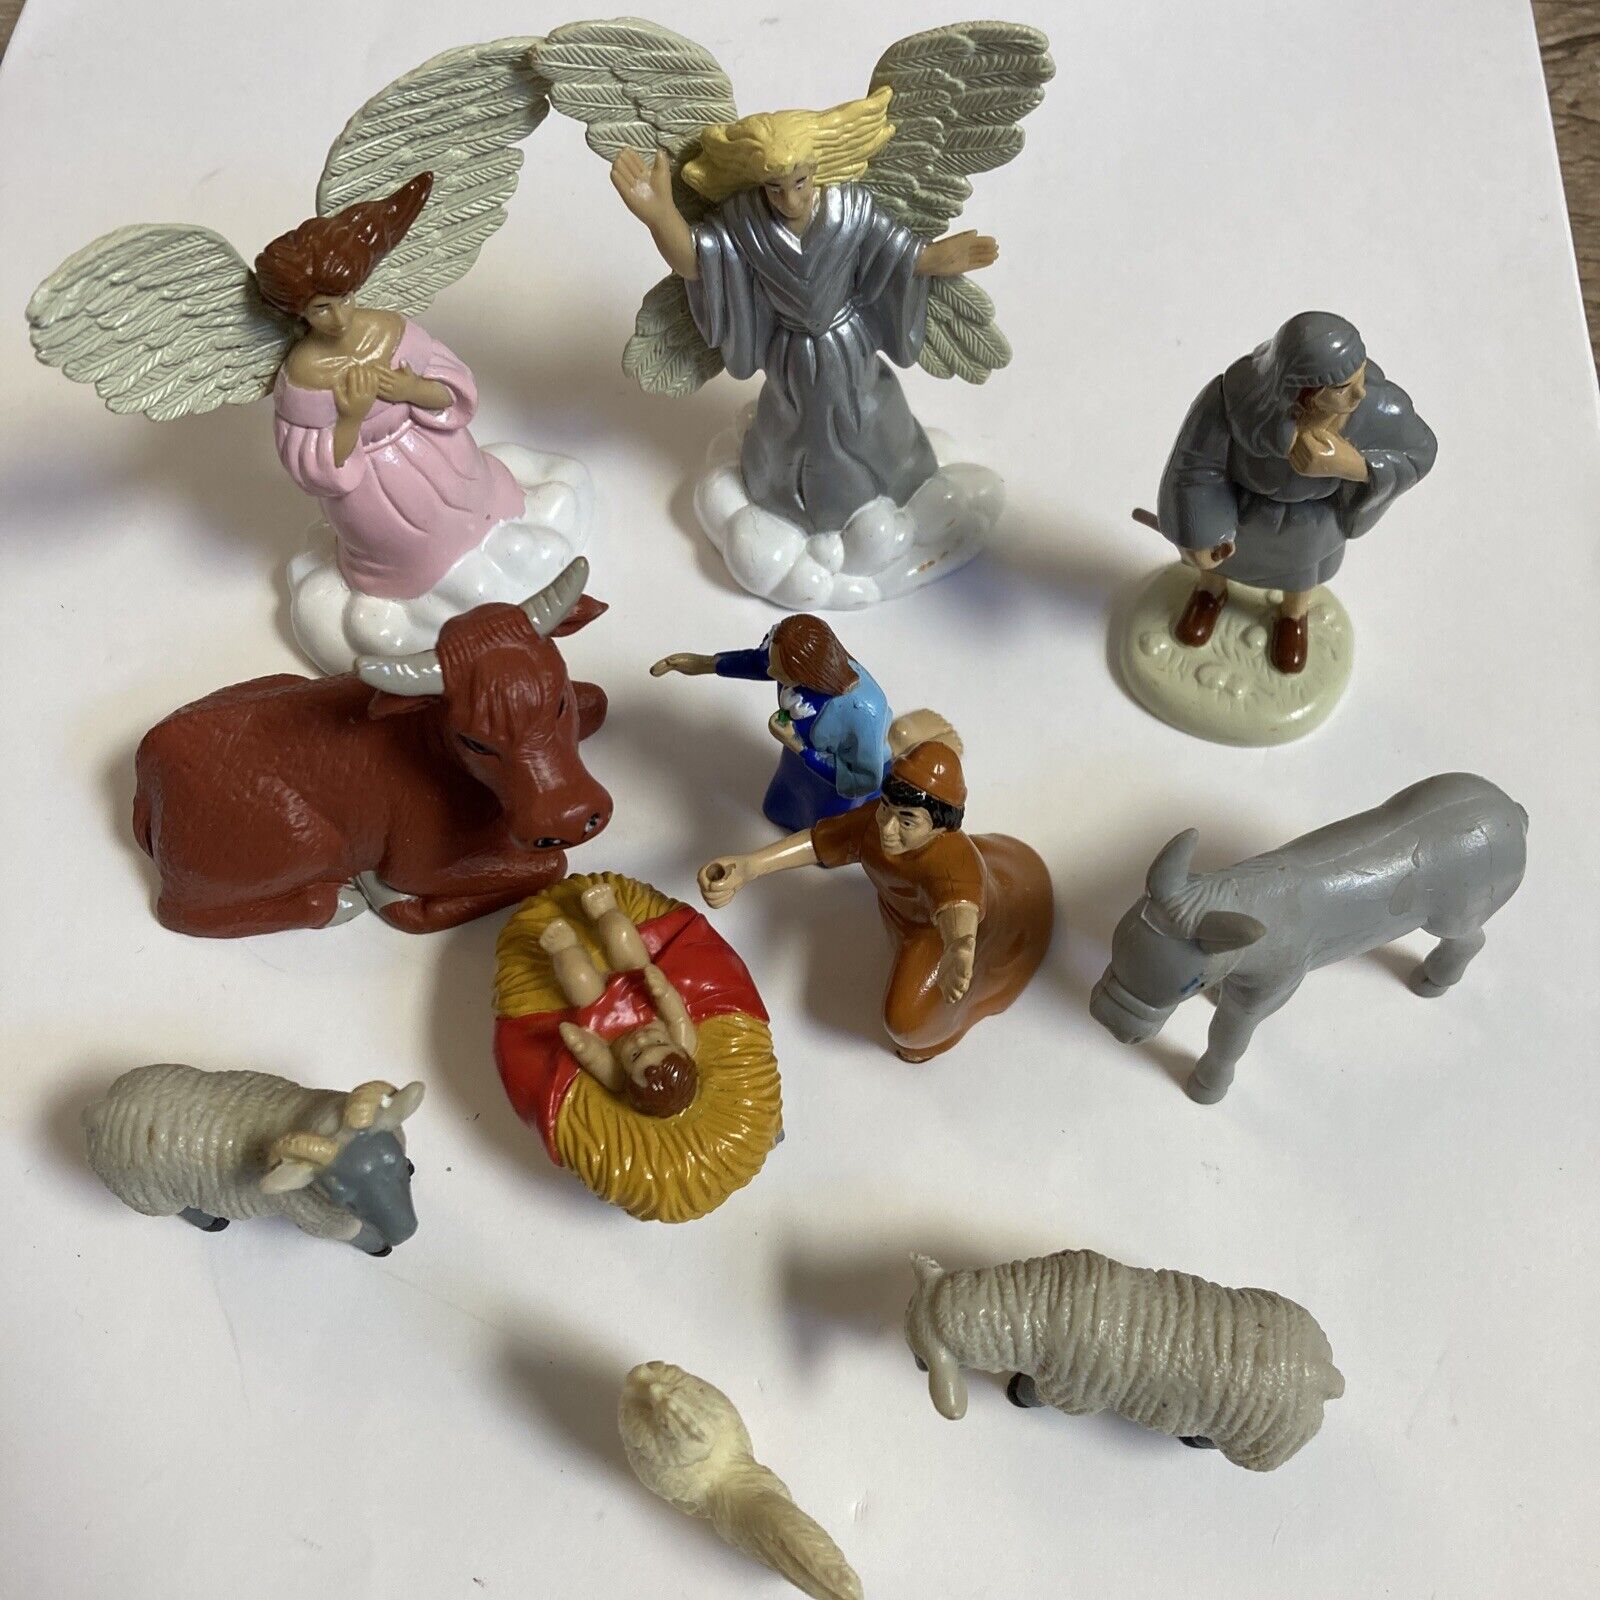 Lot of 11 Vintage Nativity Figures 1998 CSi  Figurines  Animals, Angels, Jesus